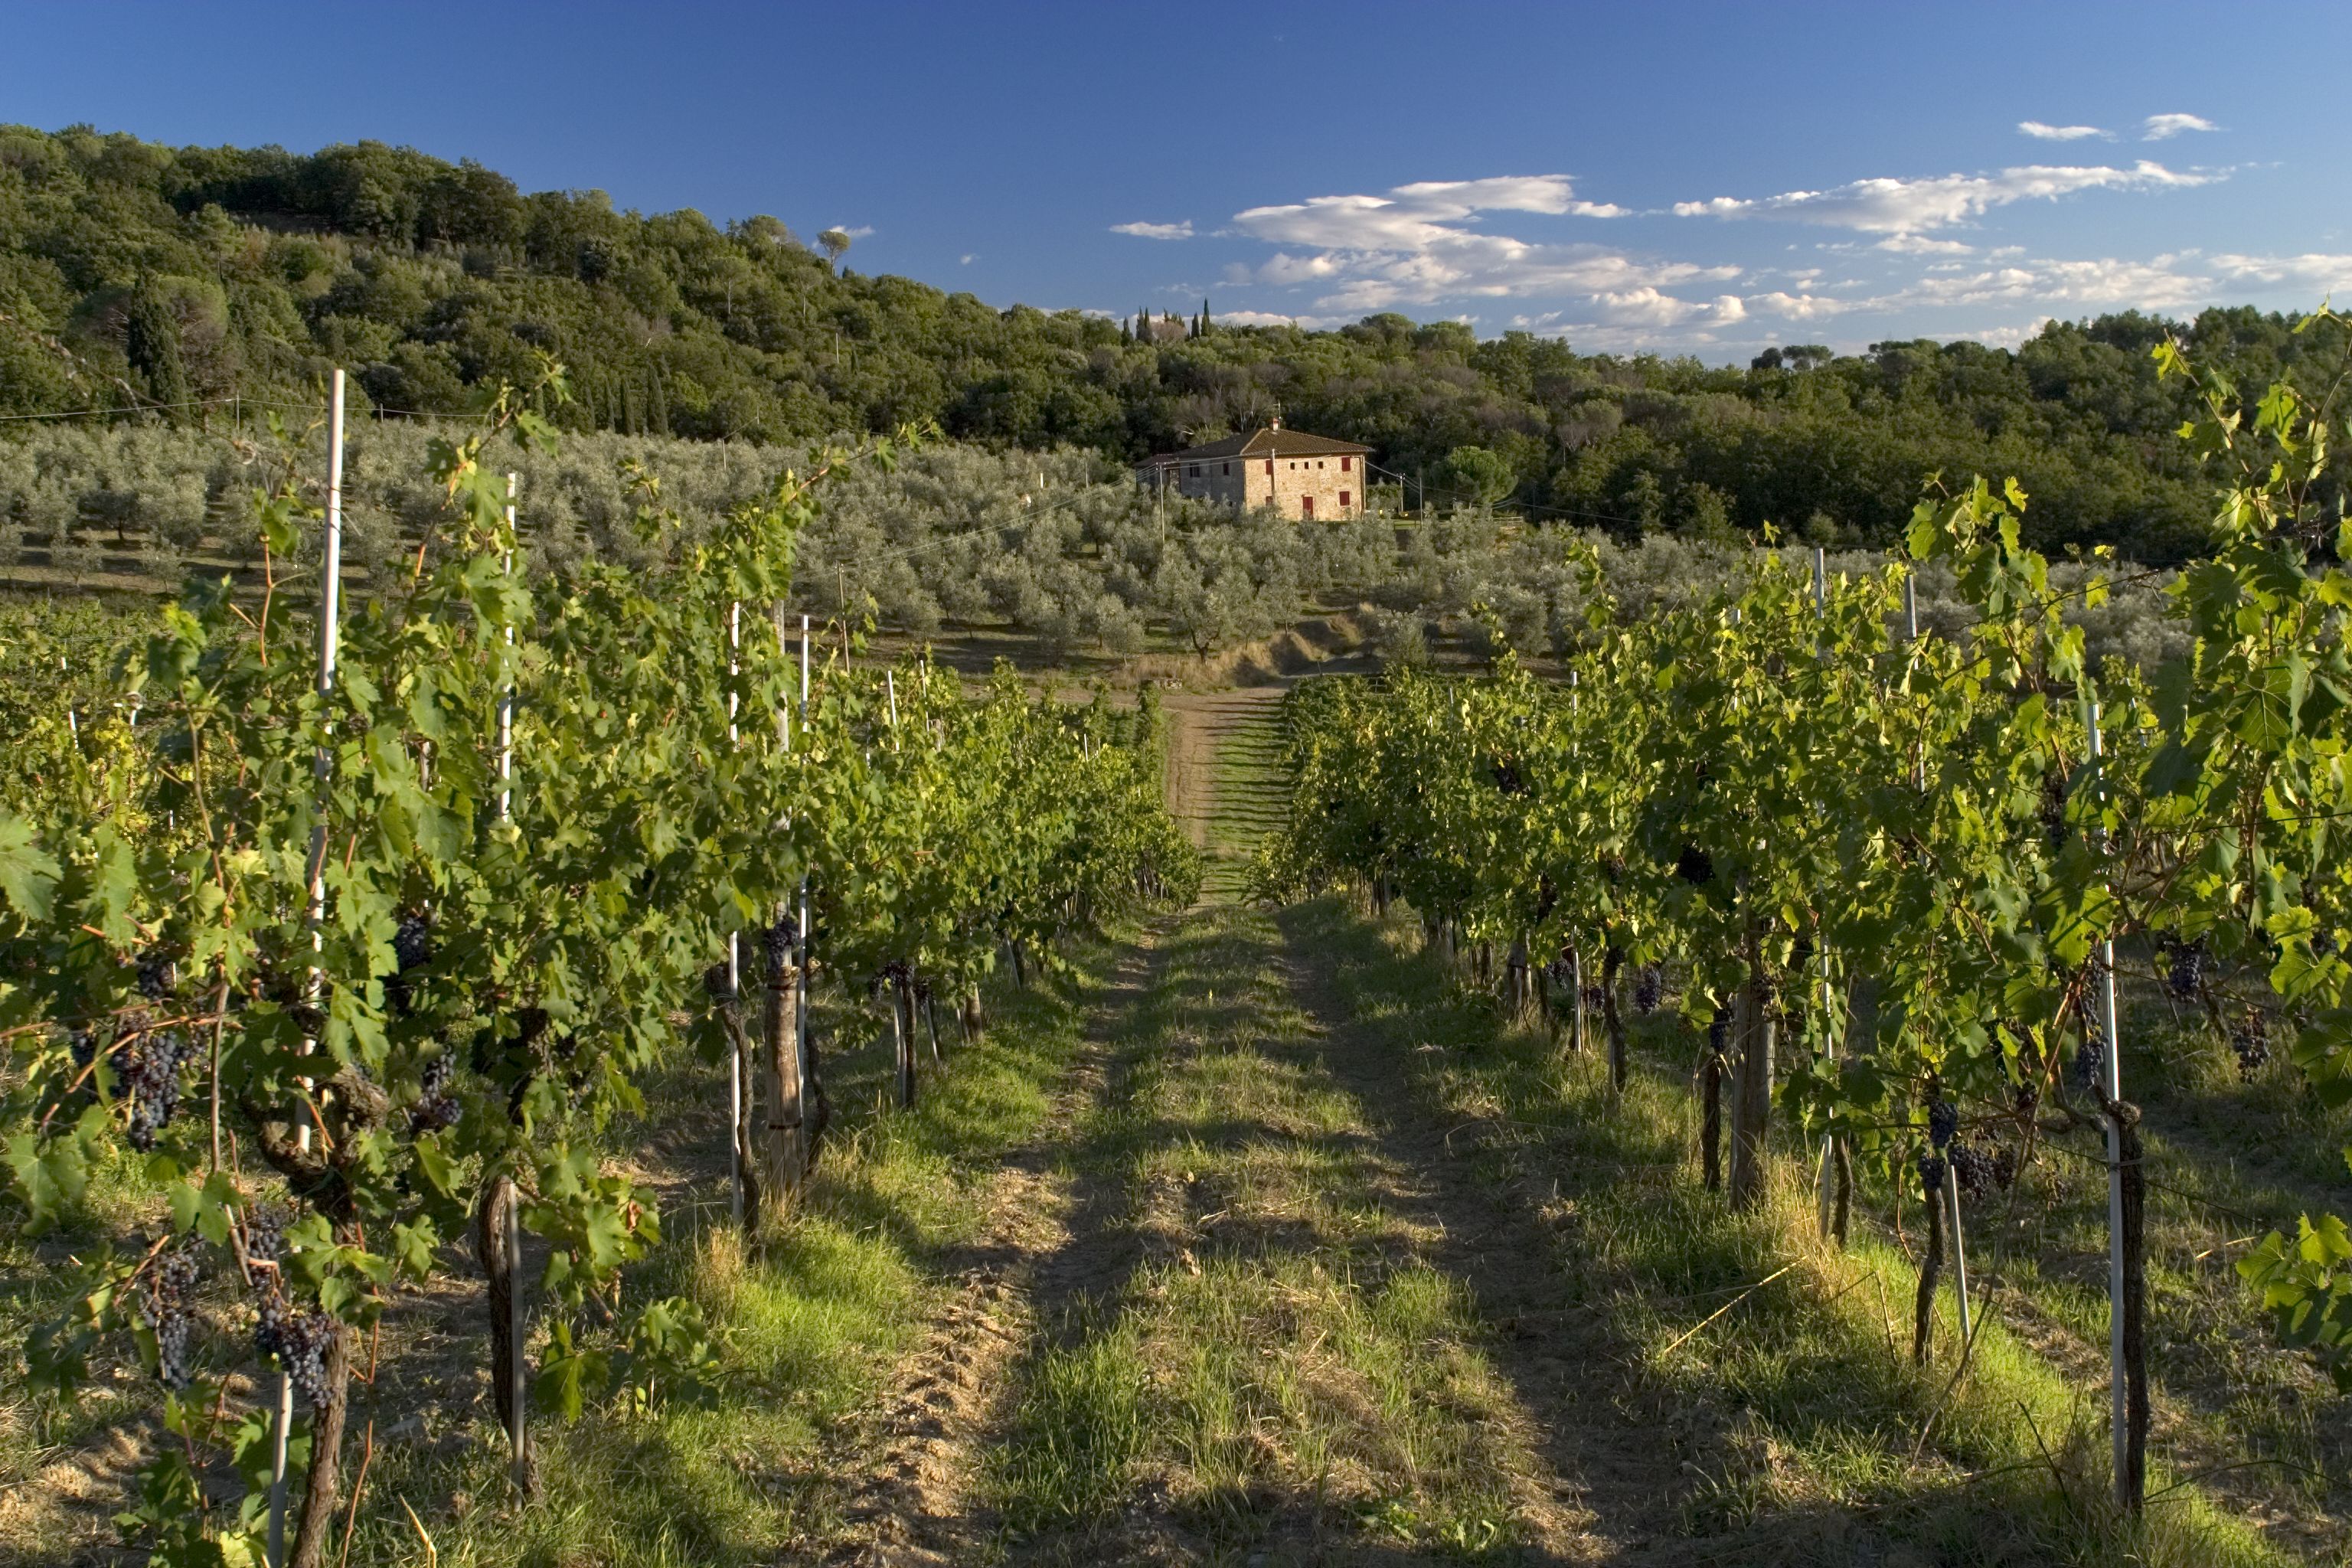 Promozione all'estero e interventi sui vigneti: 6 milioni in più per i viticoltori toscani